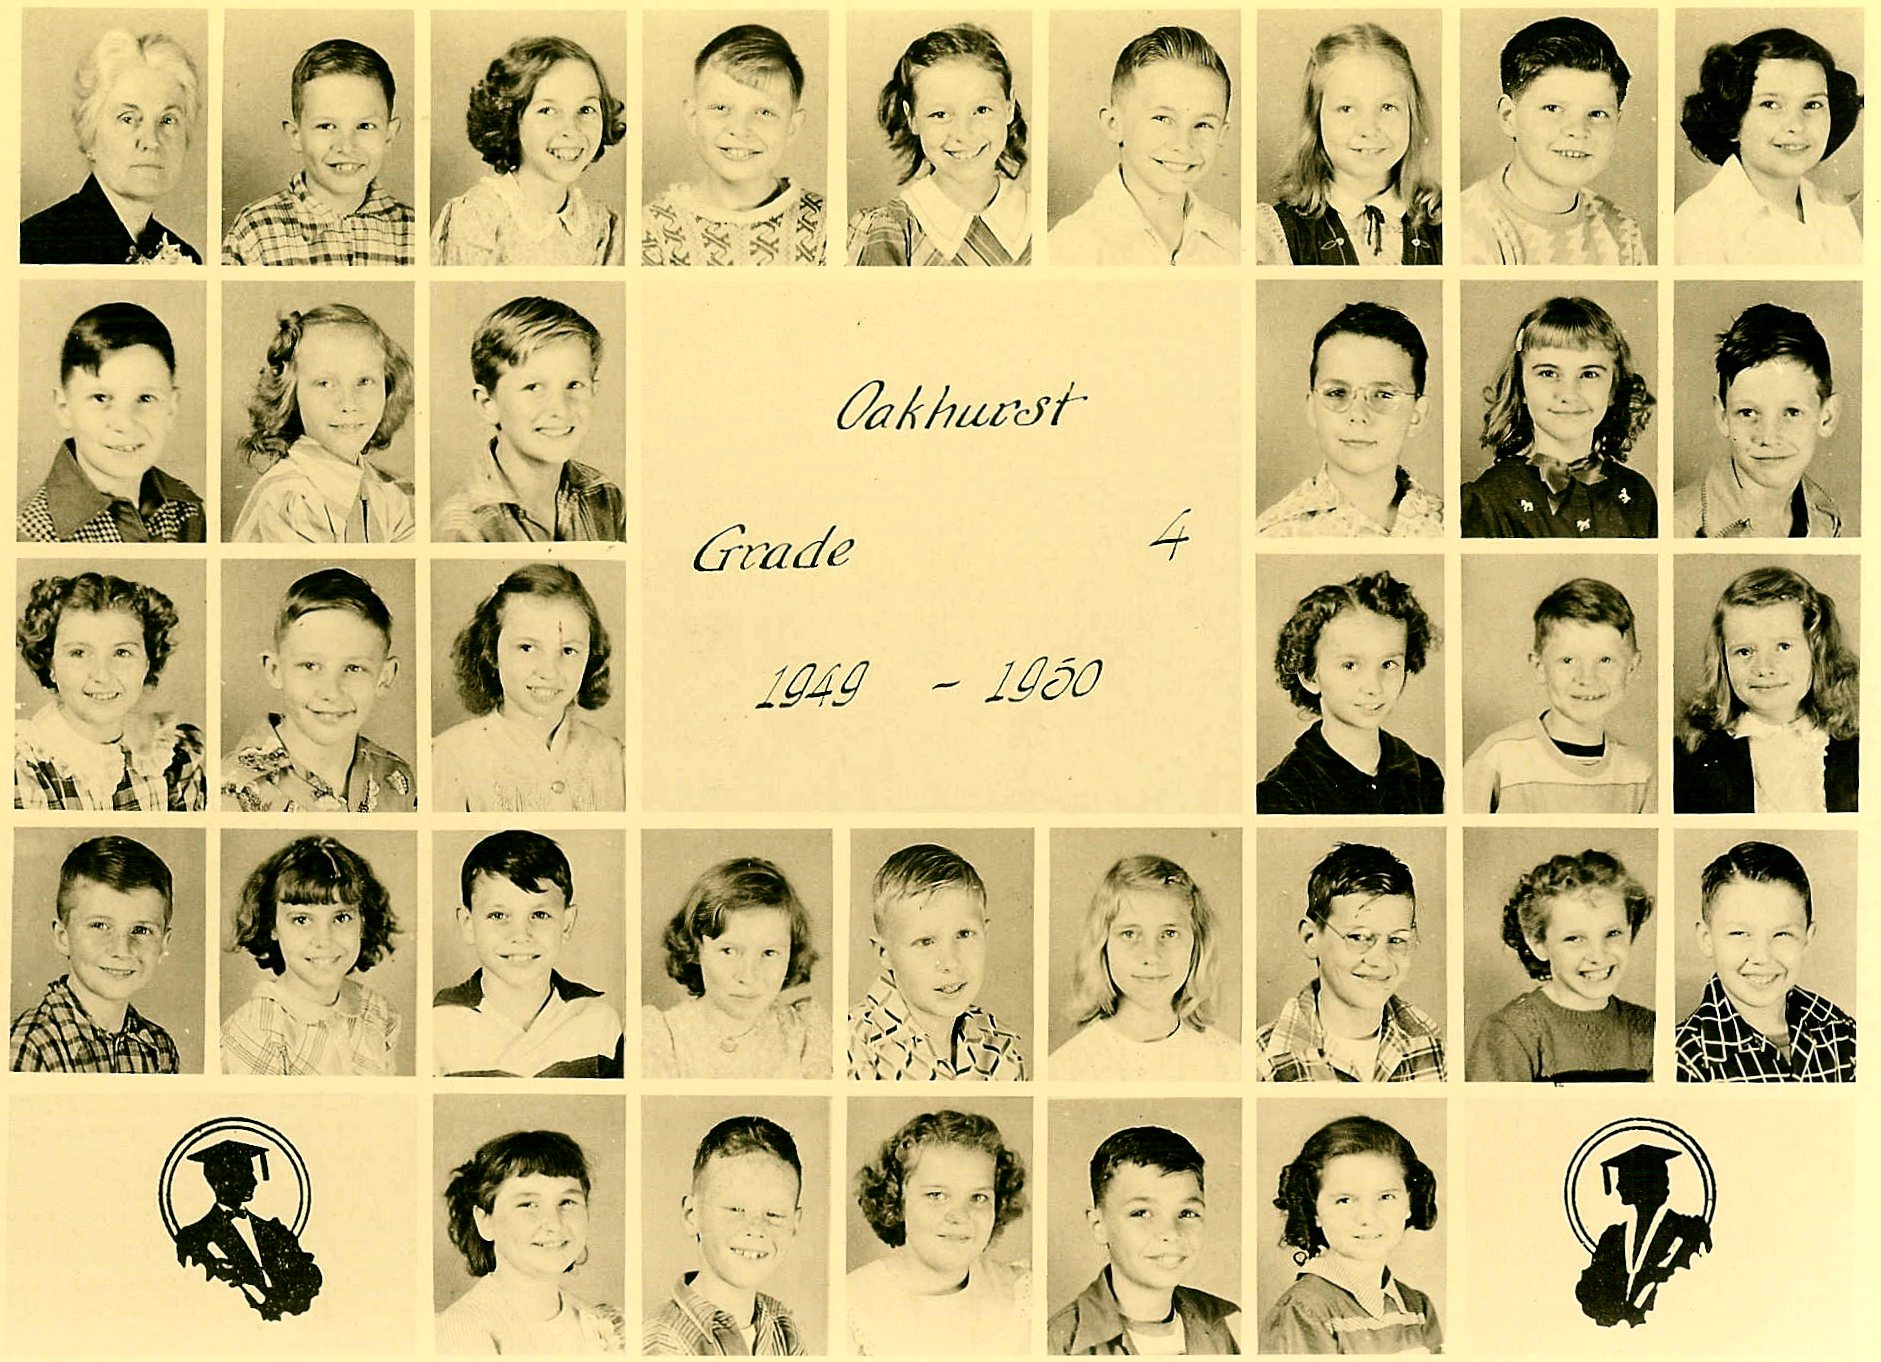 Oakhurst's 4th grade class, 1949-50, HERE.